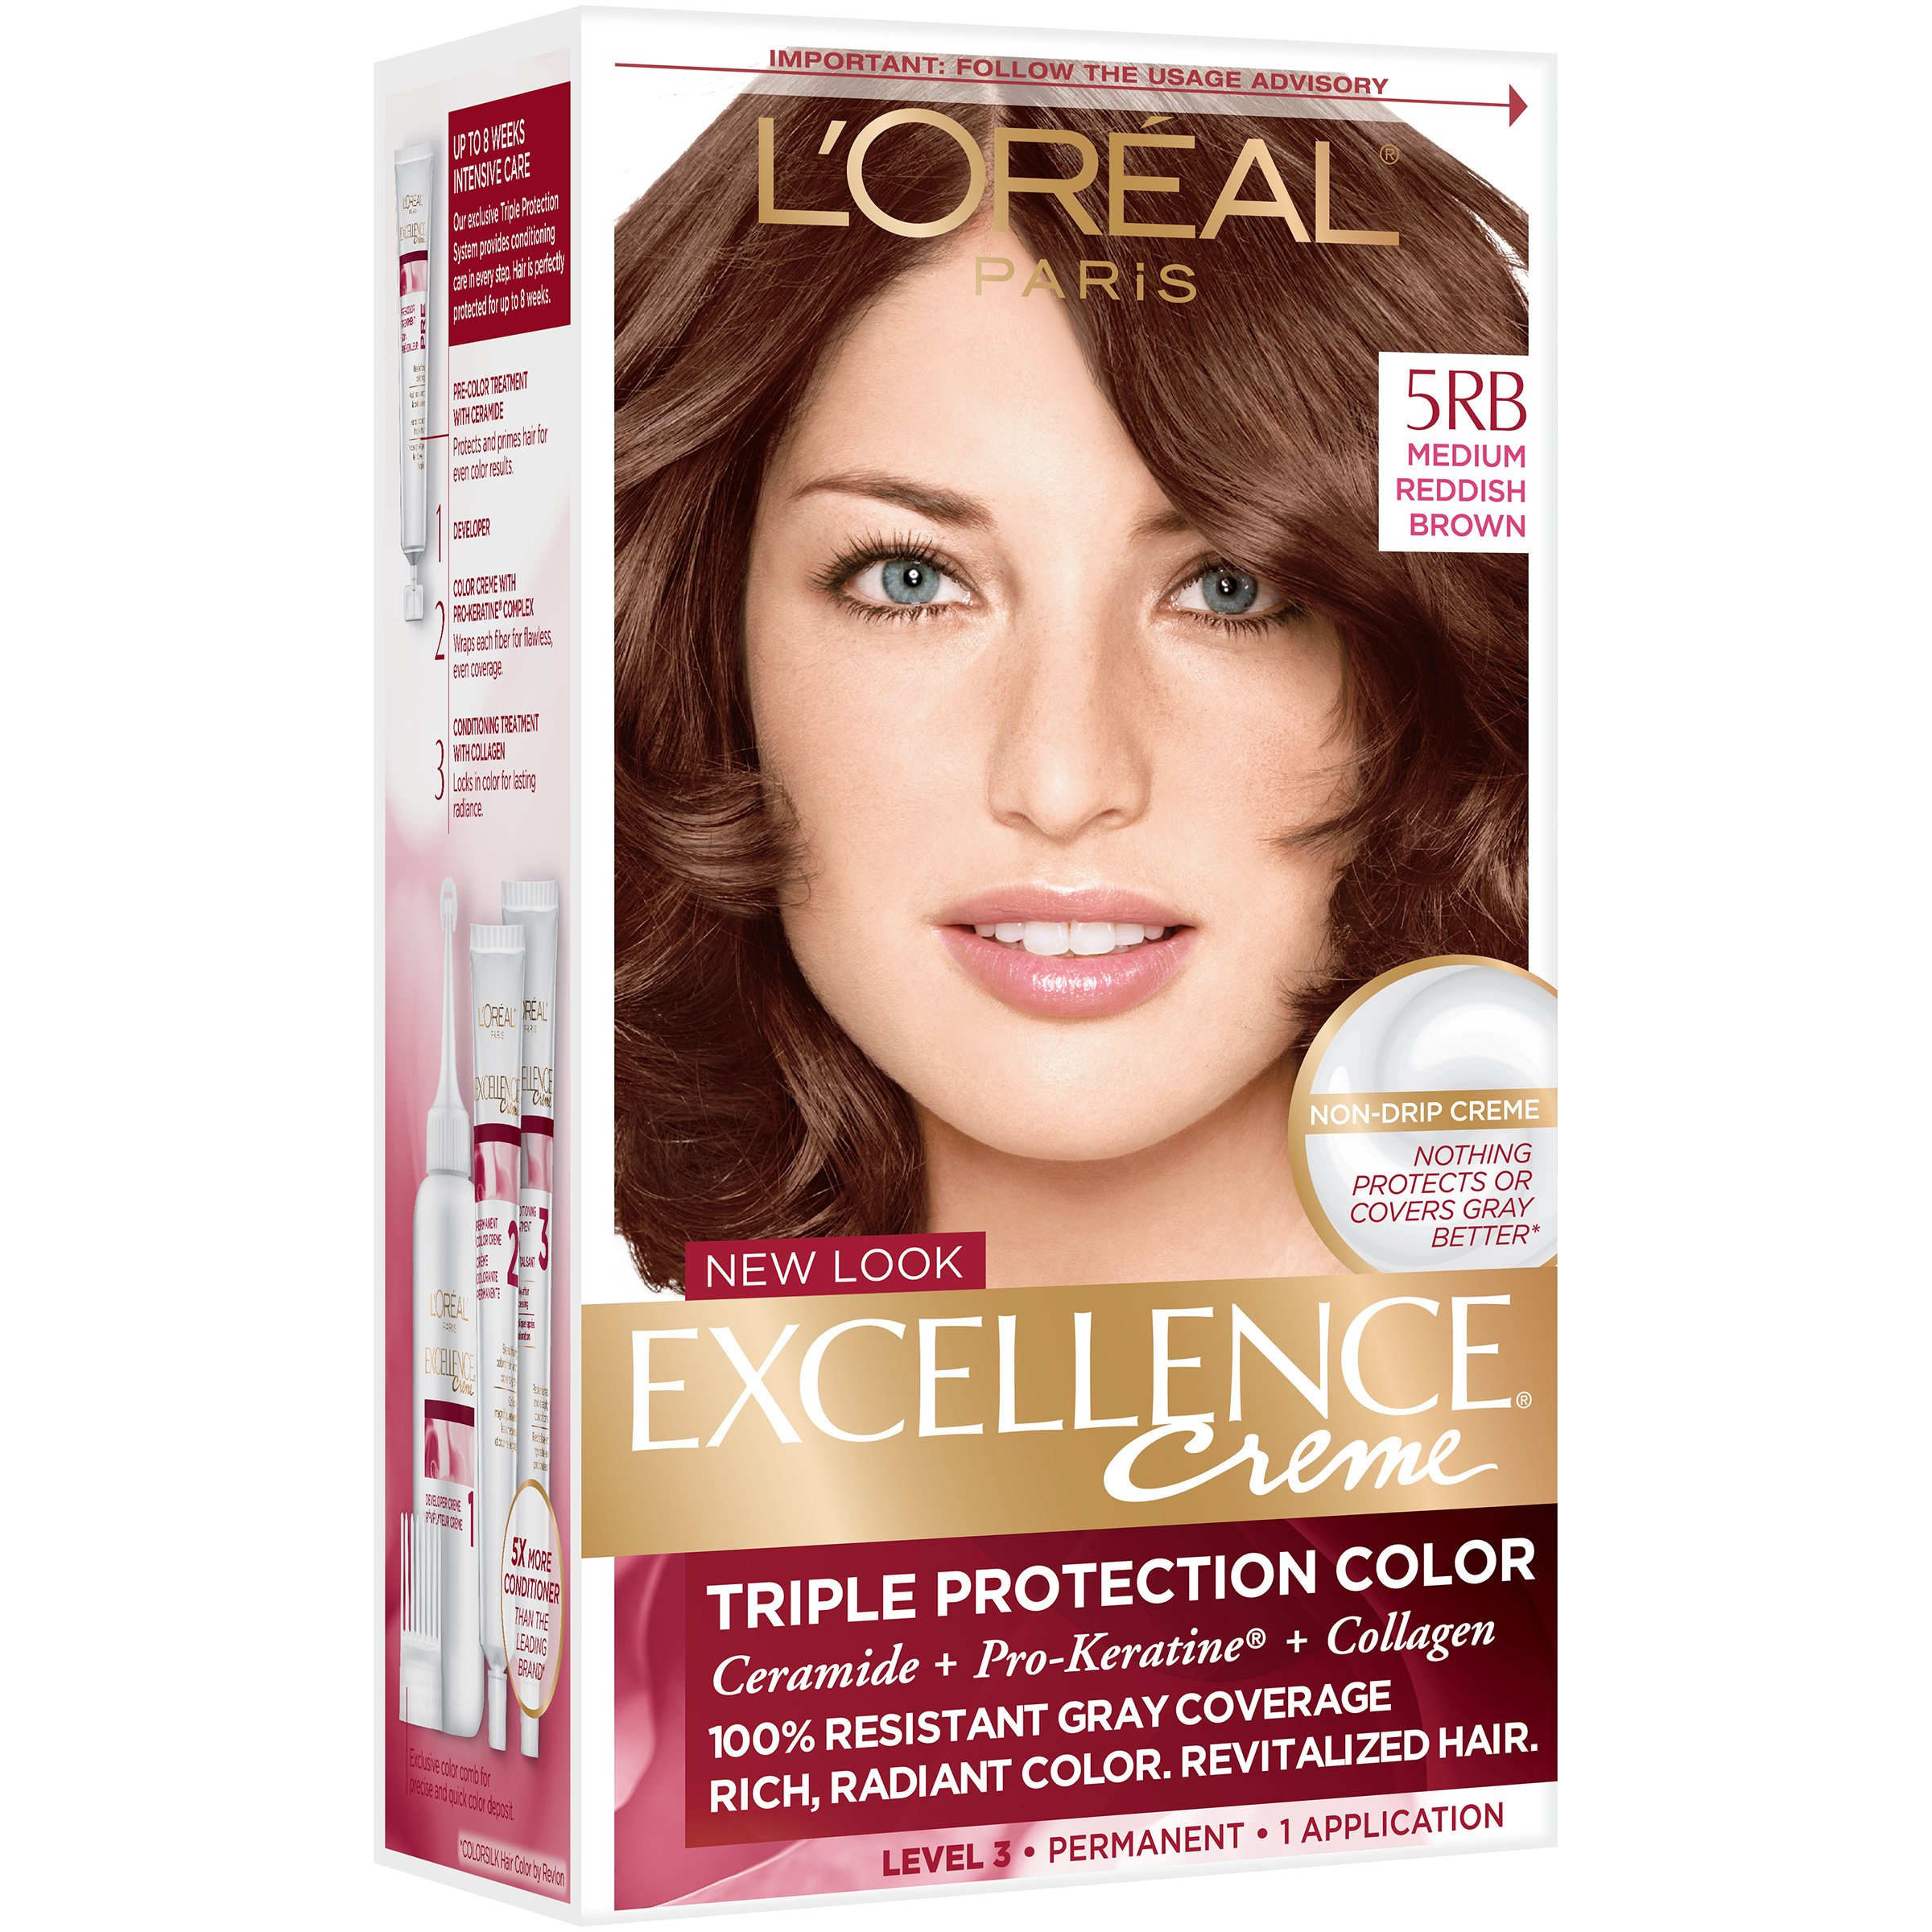 L'Oreal Paris Excellence Créme Permanent Hair Color, 5RB Medium Reddish